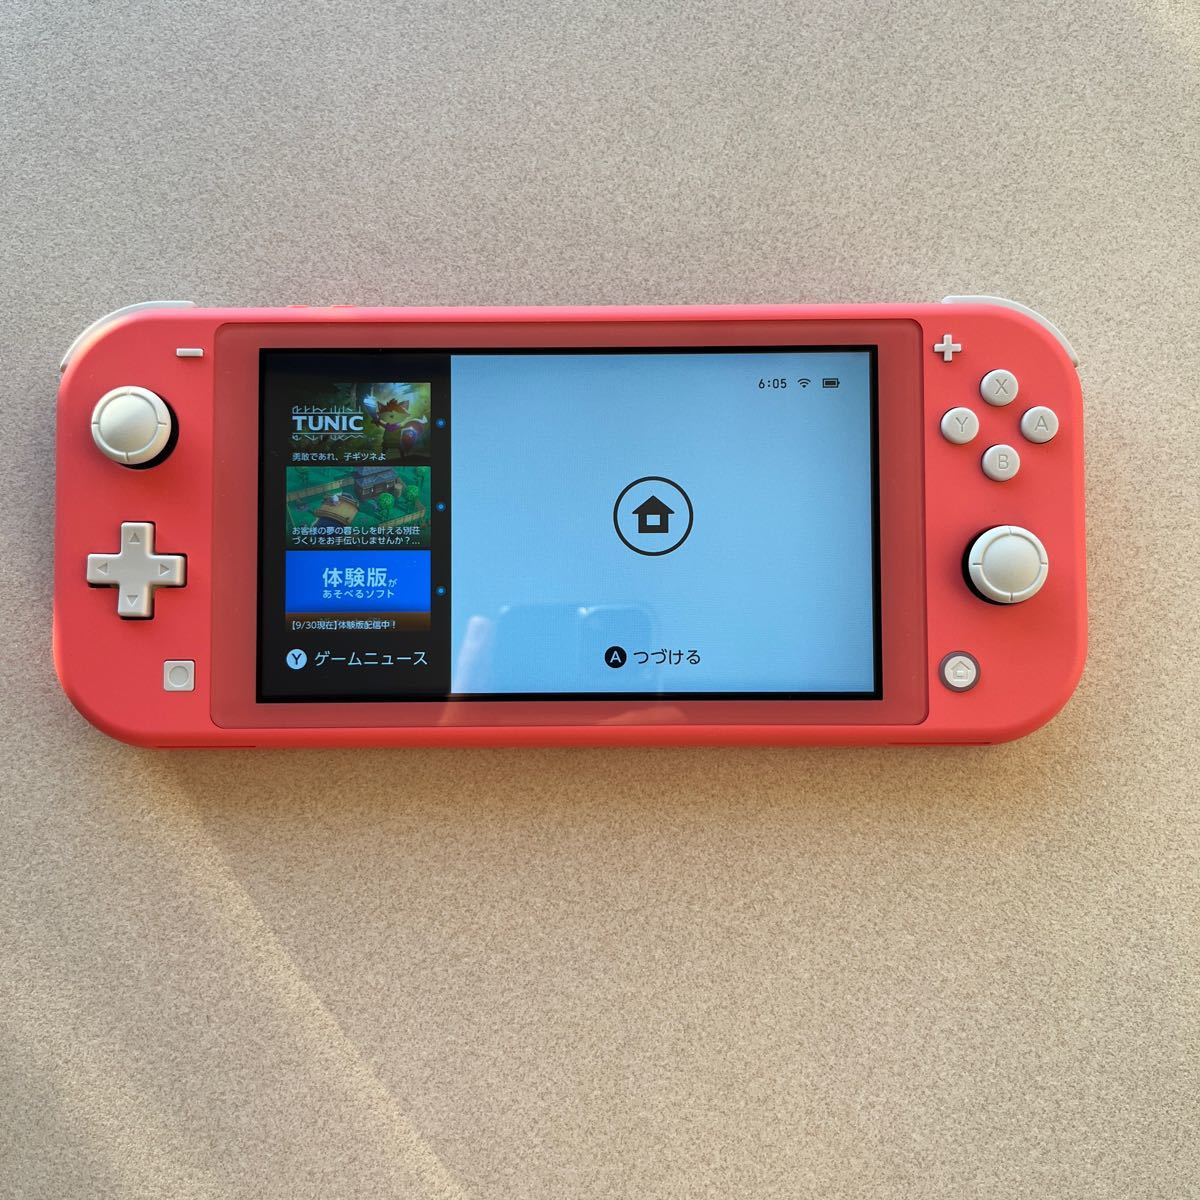 商品も通販 Nintendo Switch セット コーラルHDH-001 Lite 携帯用ゲーム本体